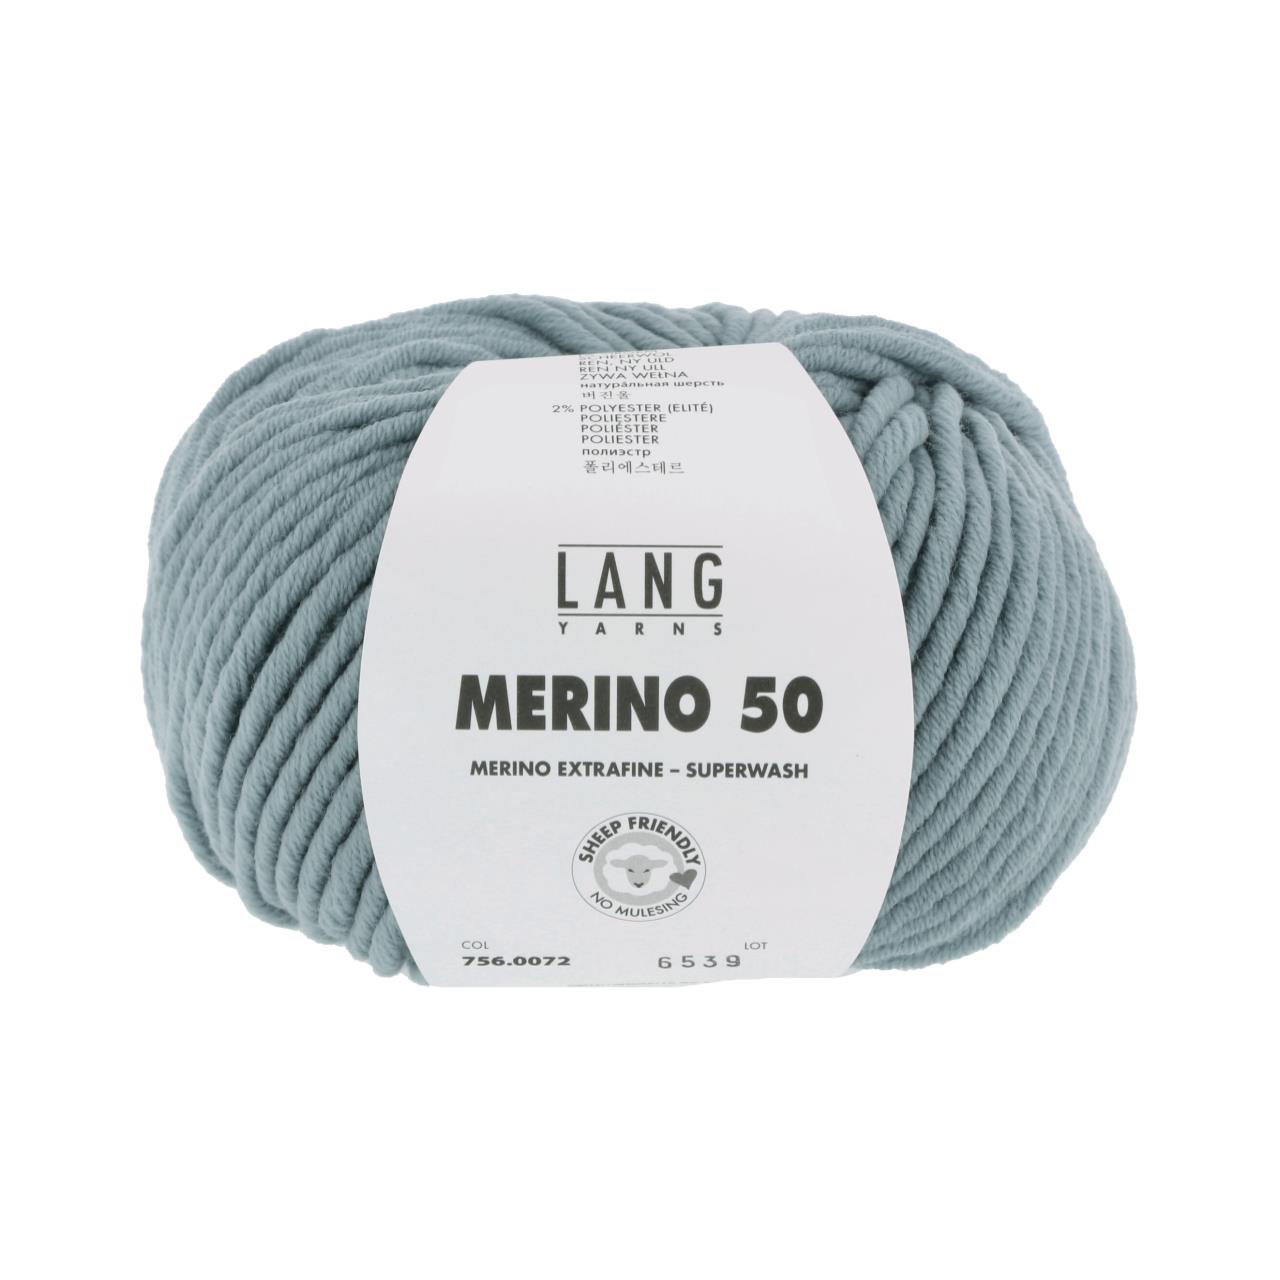 Merino 50 72 Mint Dunkel